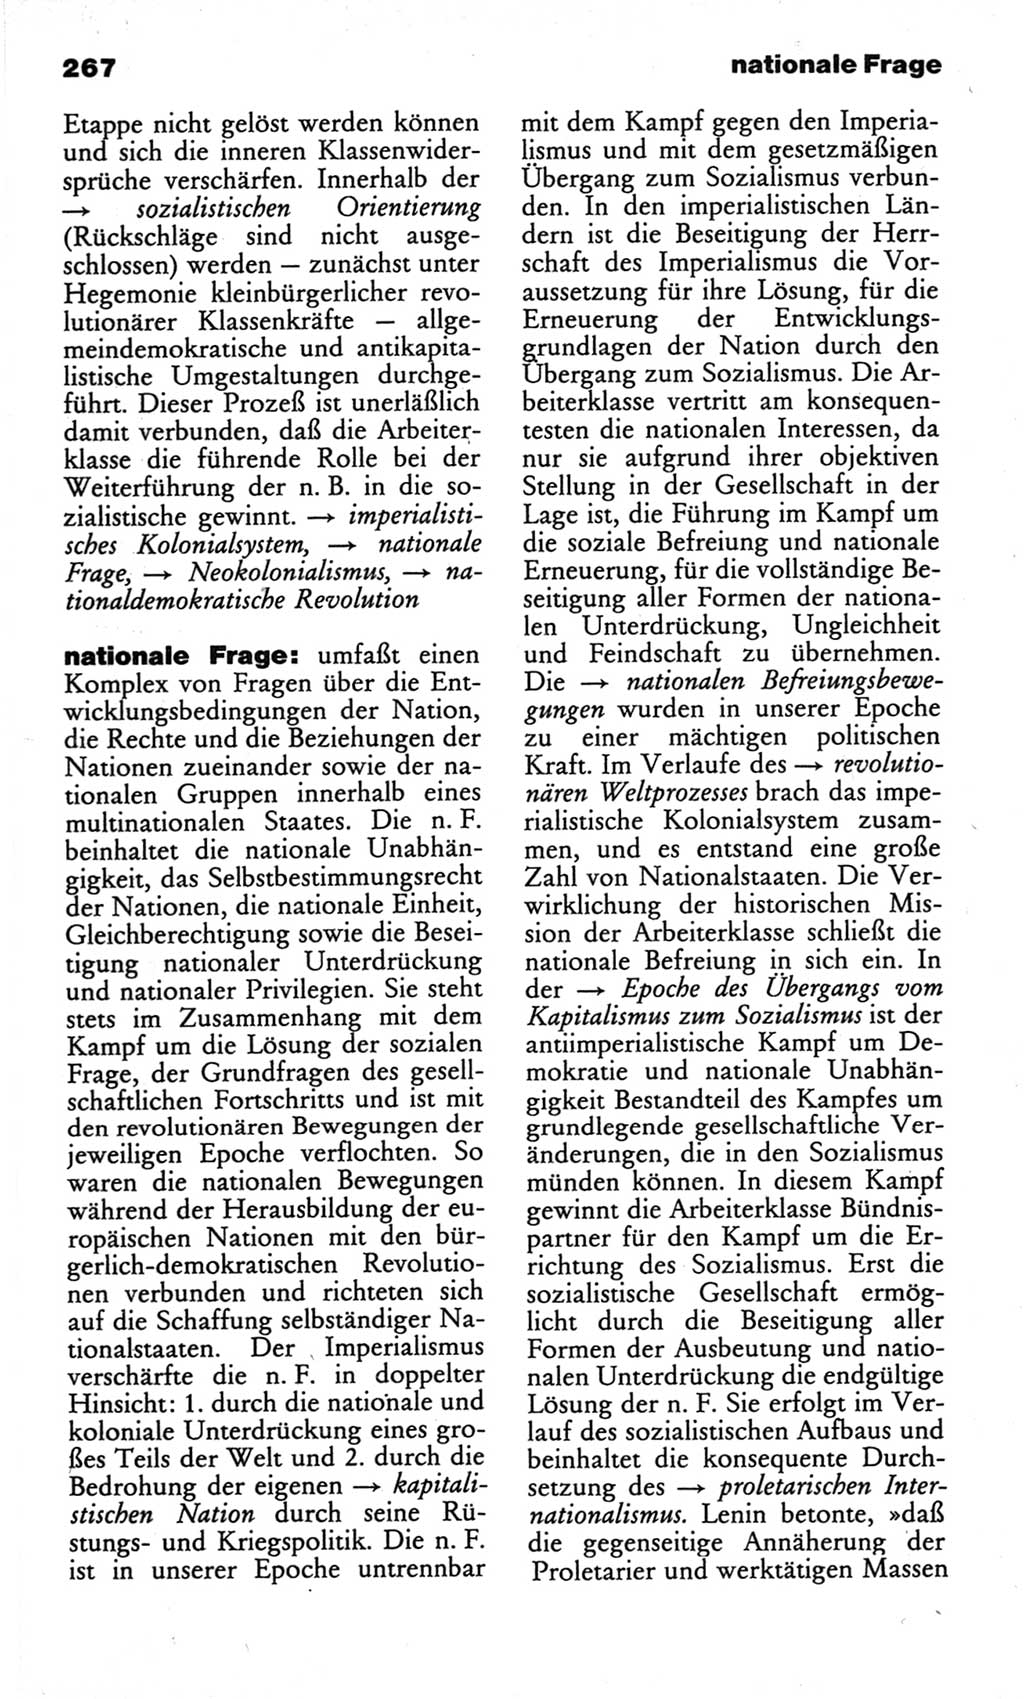 Wörterbuch des wissenschaftlichen Kommunismus [Deutsche Demokratische Republik (DDR)] 1982, Seite 267 (Wb. wiss. Komm. DDR 1982, S. 267)